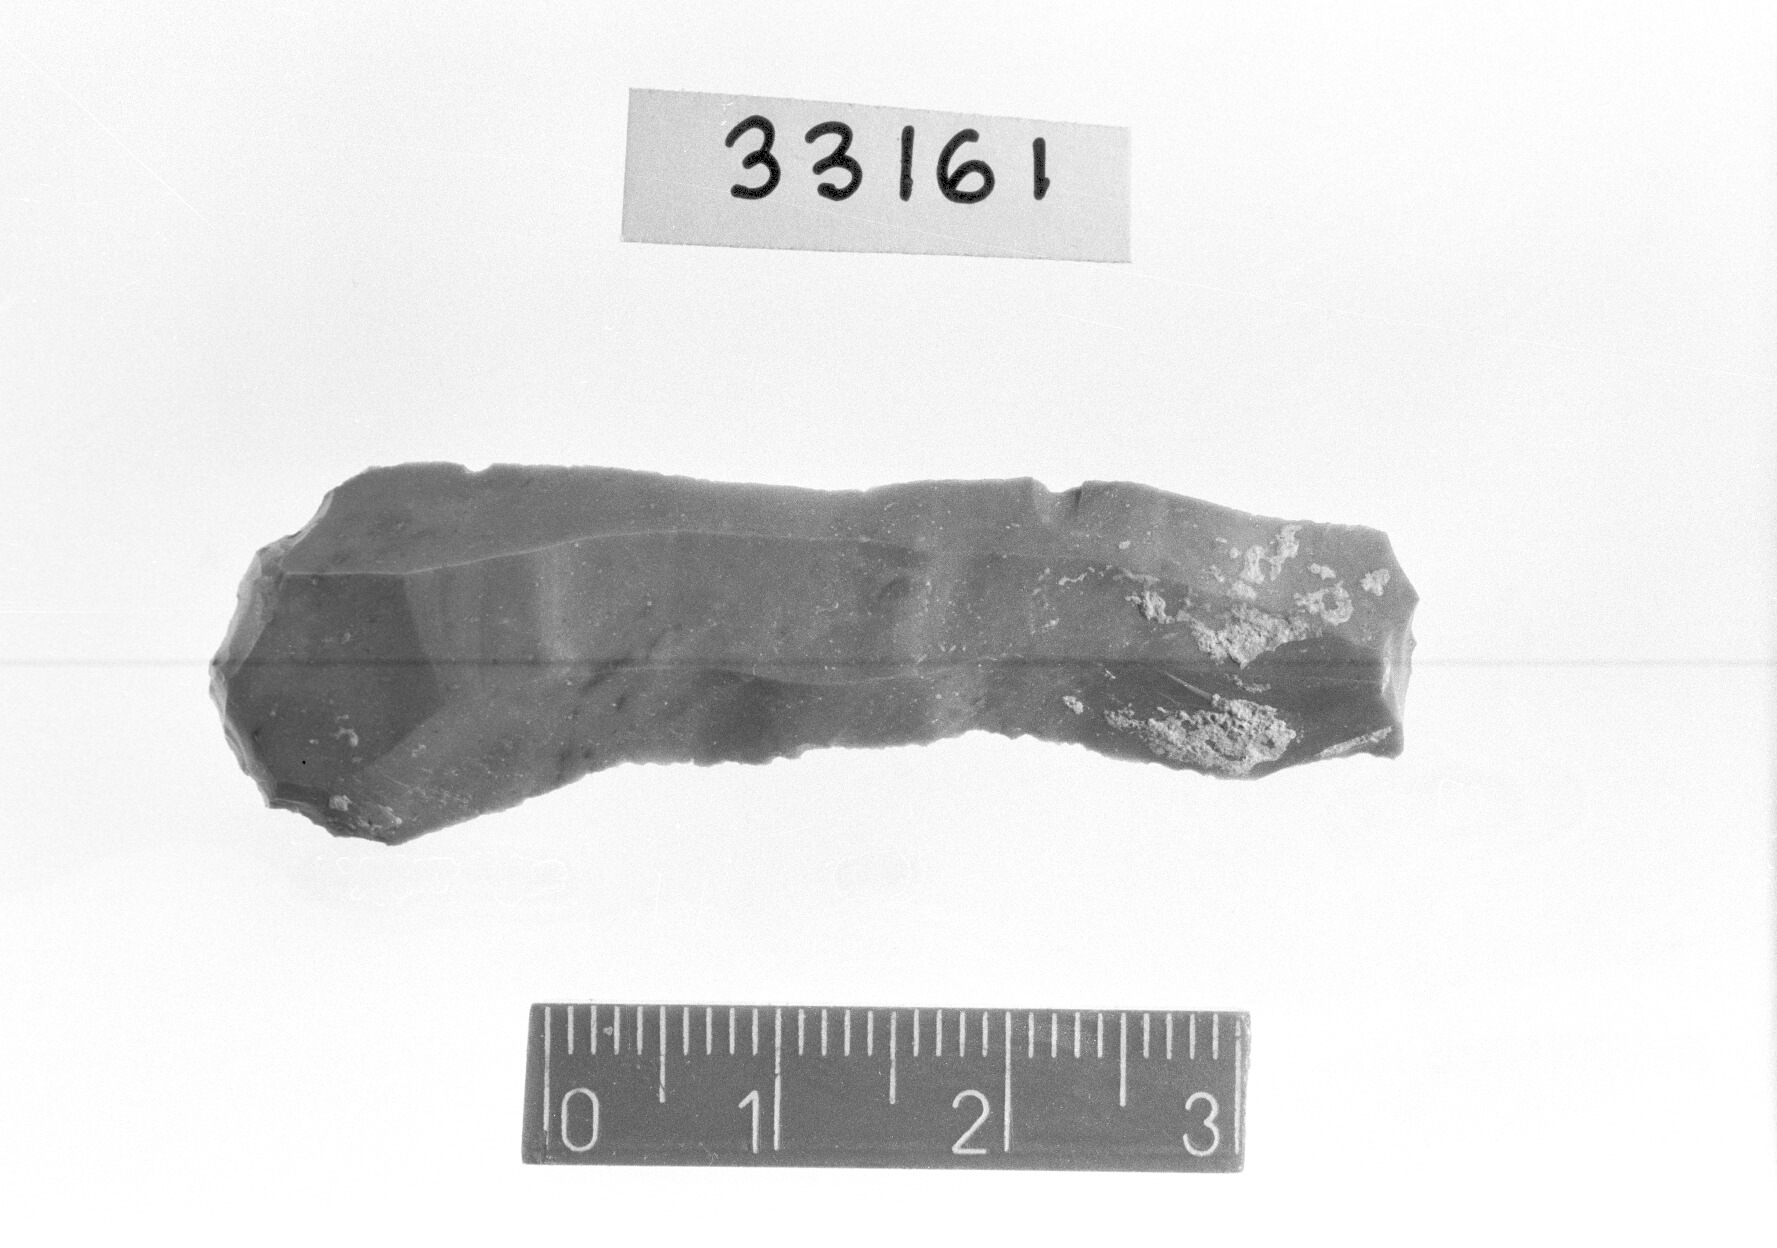 grattatoio frontale lungo - Epigravettiano (Paleolitico superiore)